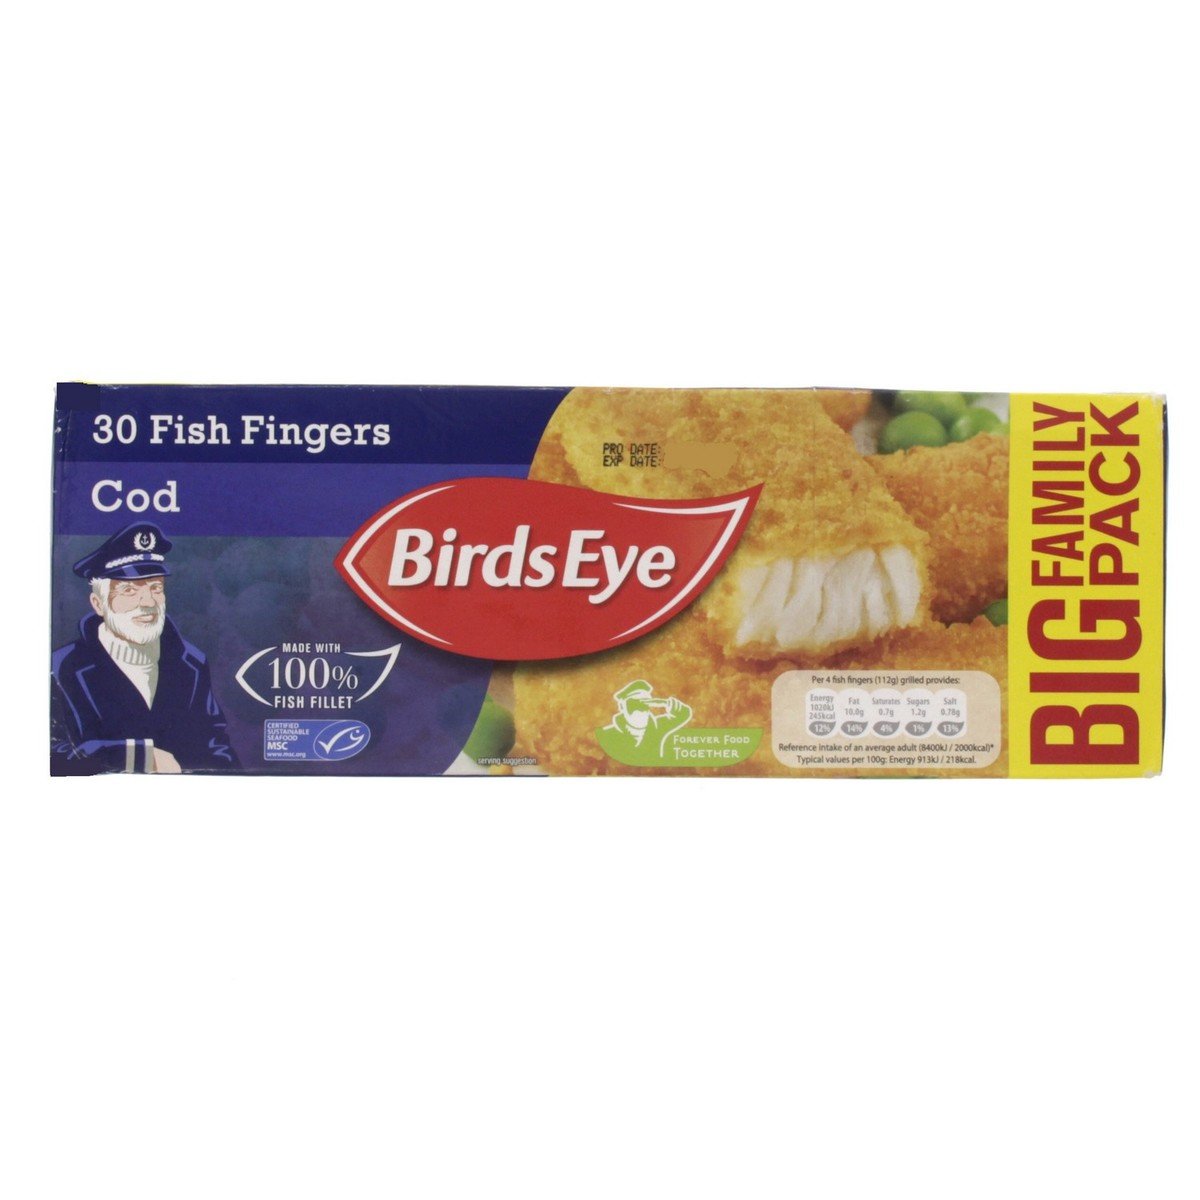 Birds Eye 30 Cod Fish Fingers 840 g